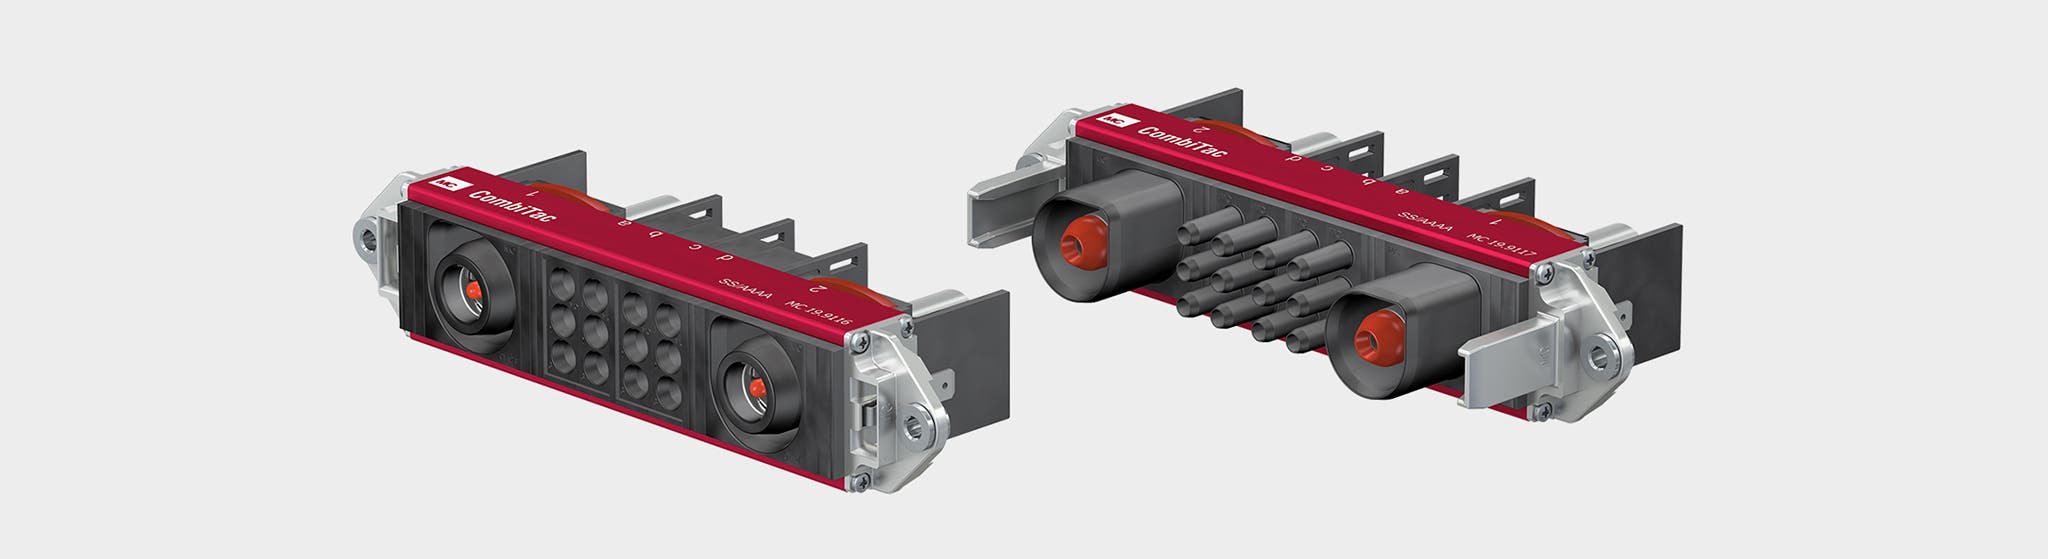 电池组连接器CT-HE符合铁路行业的特殊要求，特别适合应用于铁路车辆。